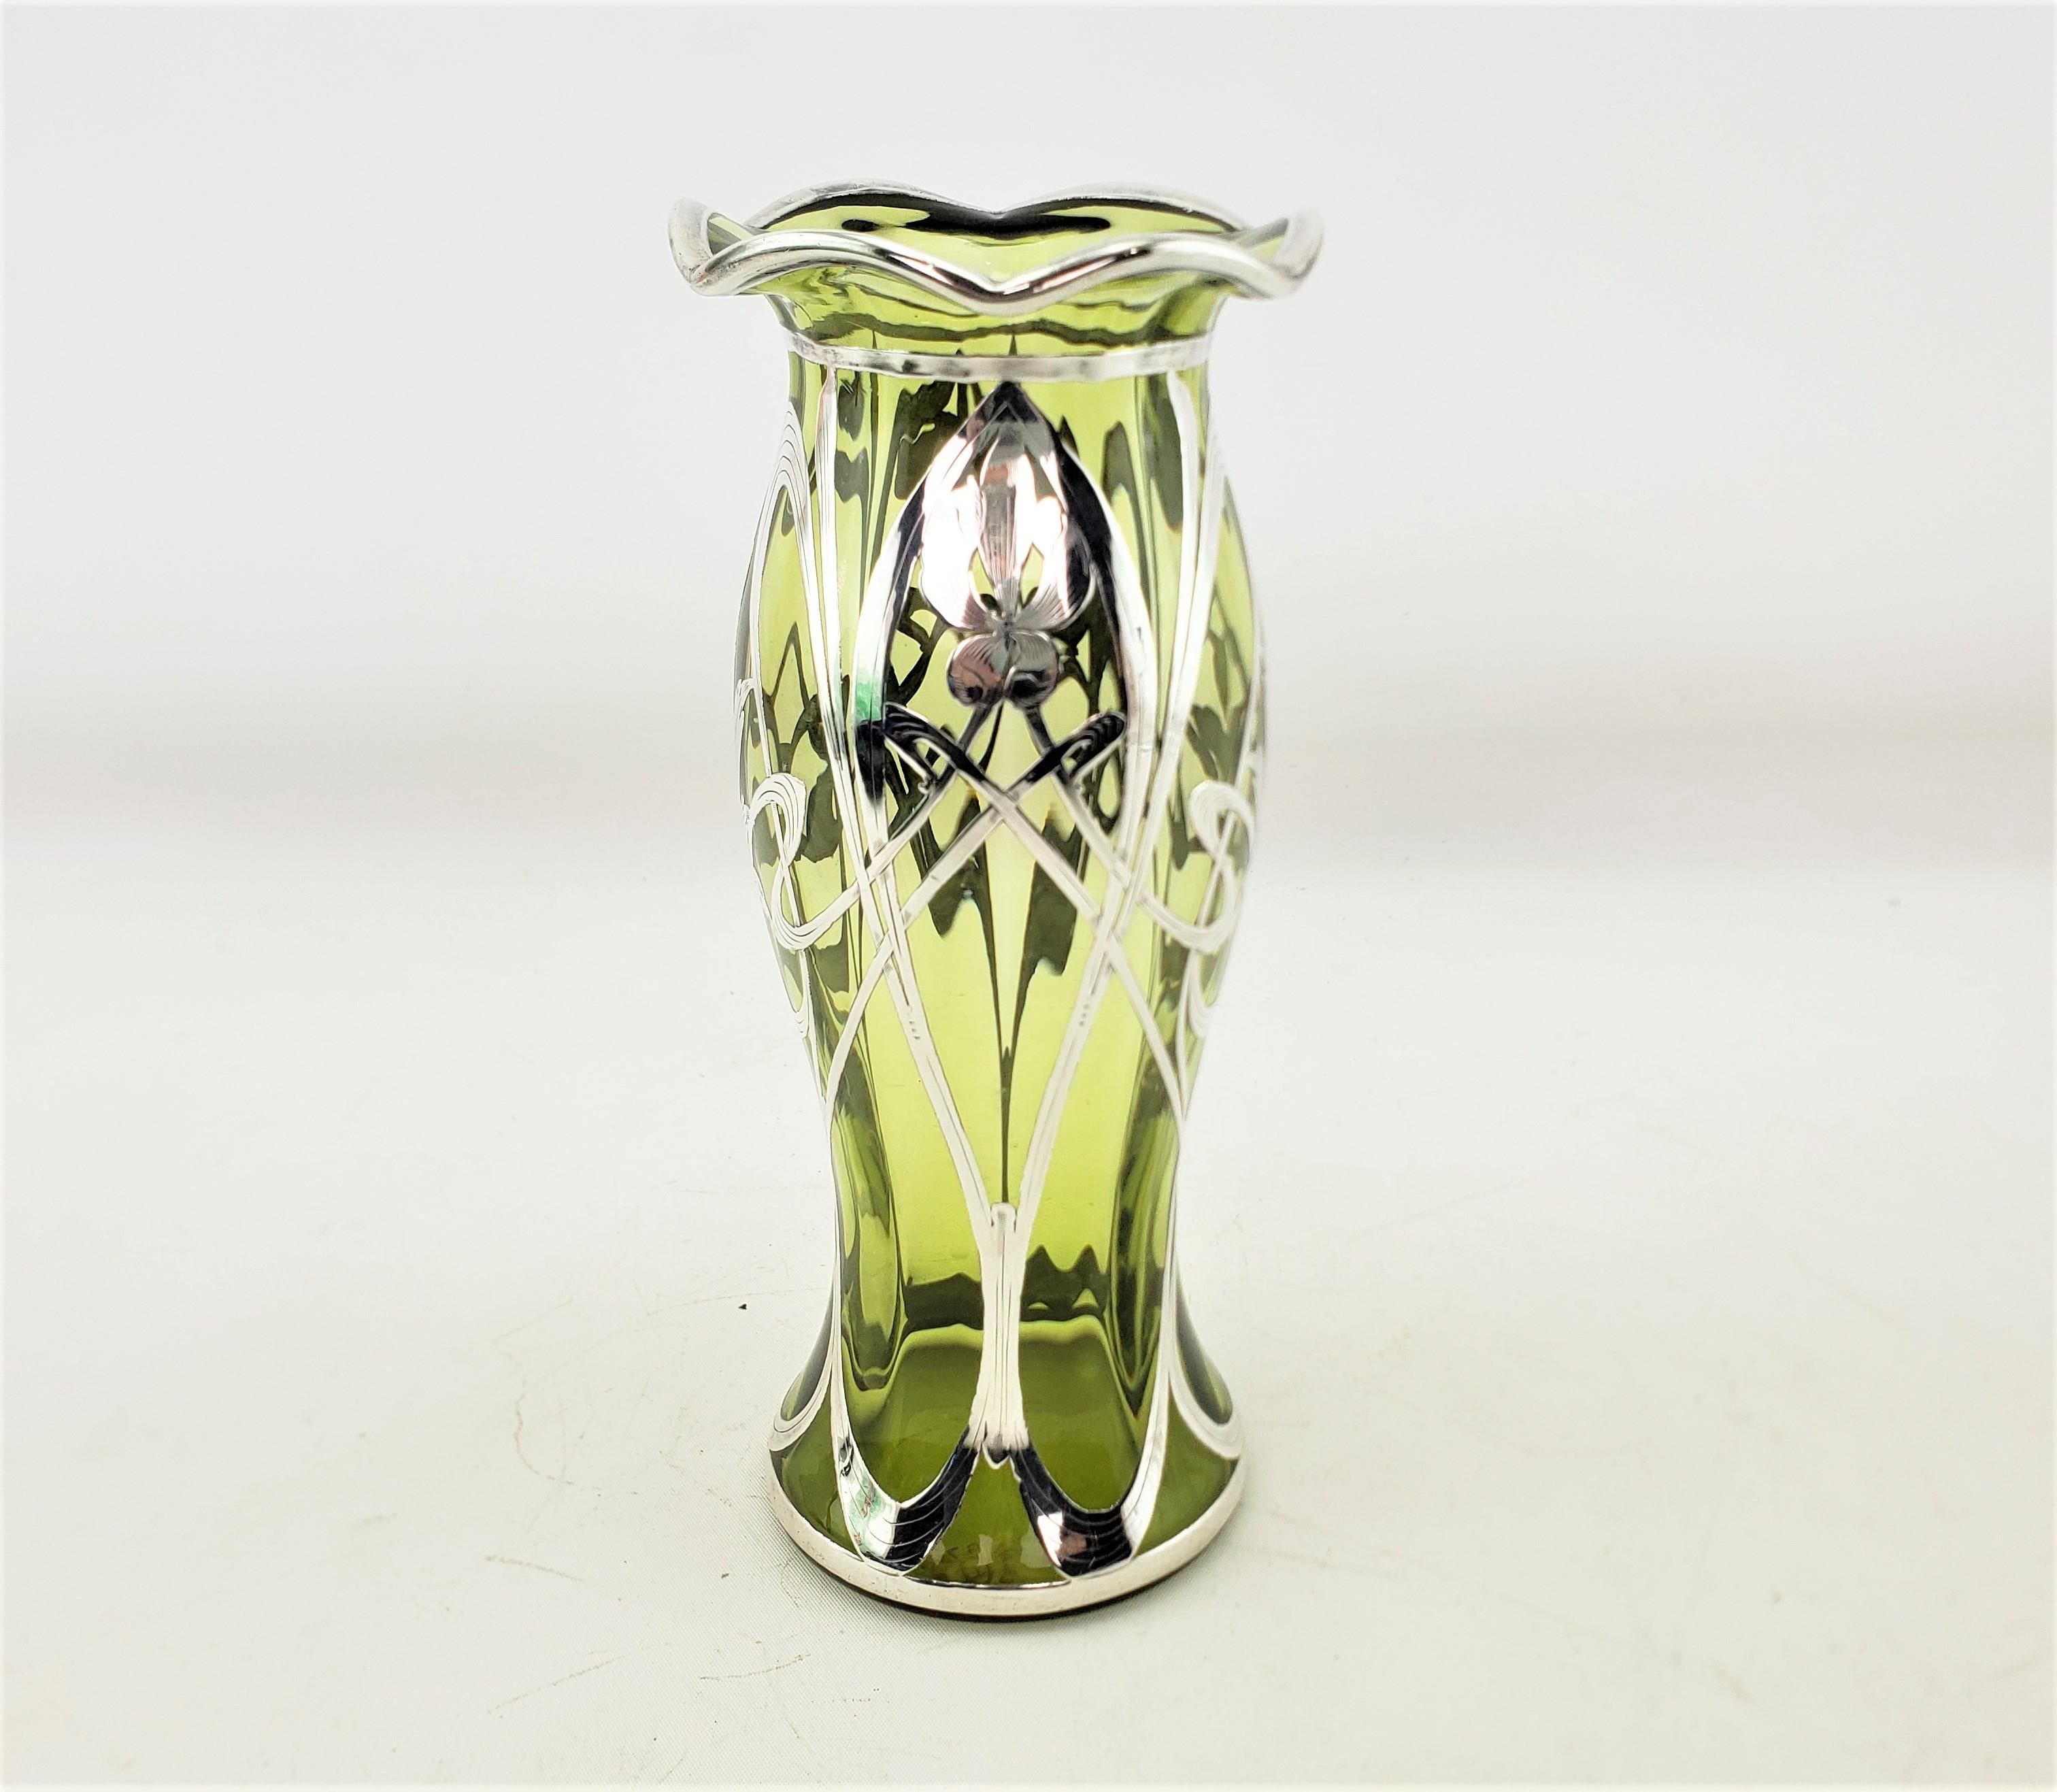 Diese antike Vase ist unsigniert, stammt aber vermutlich aus Österreich und wurde um 1900 im Jugendstil gefertigt. Die Vase besteht aus einer blassgrünen Kunstglasvase mit einem Rand in Tortenform und einem silbernen Überfang, der stilisierte Blumen